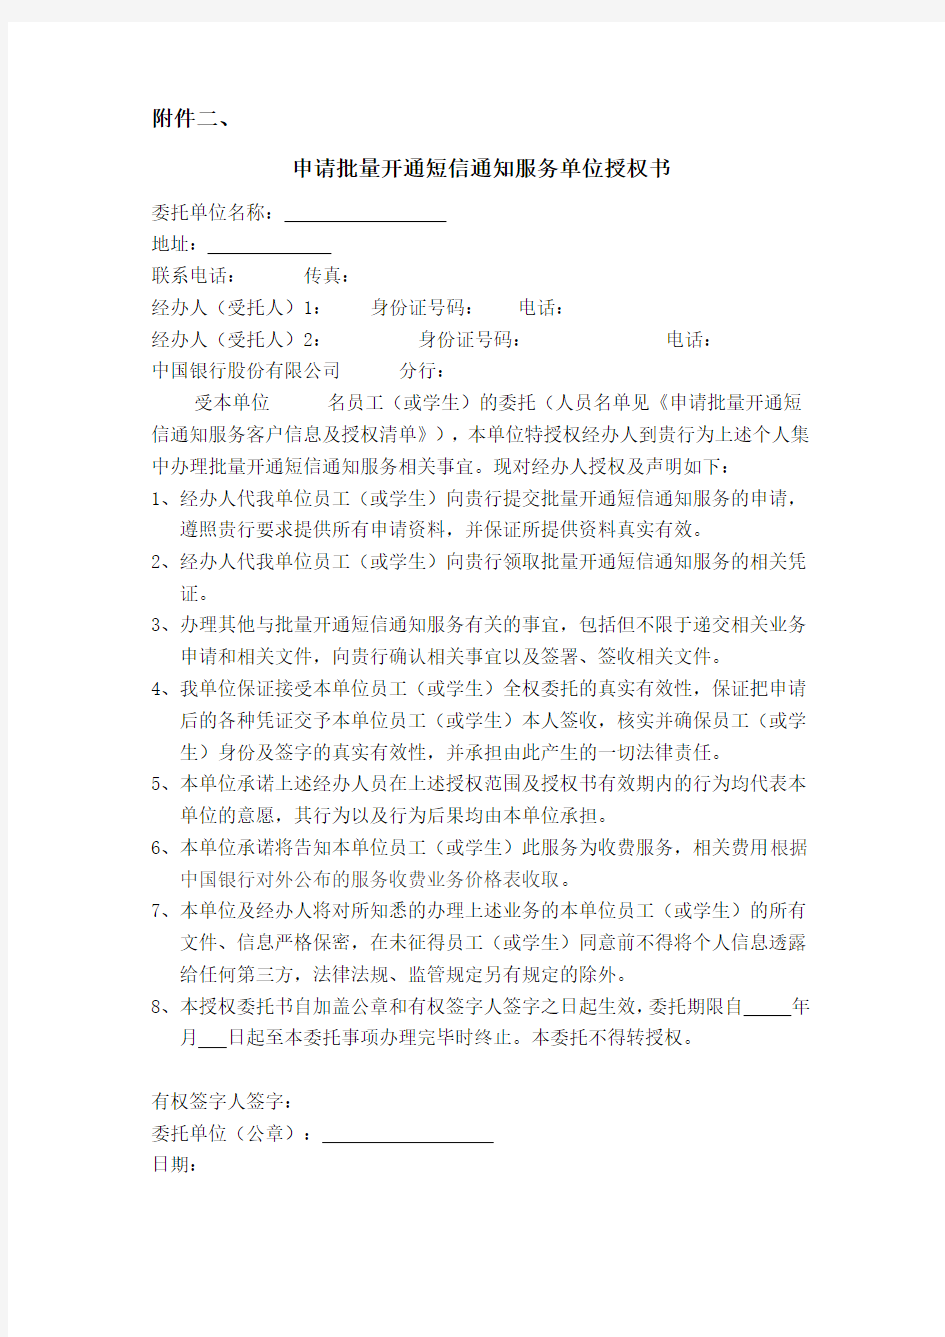 中国银行-申请批量开通短信通知服务单位授权书